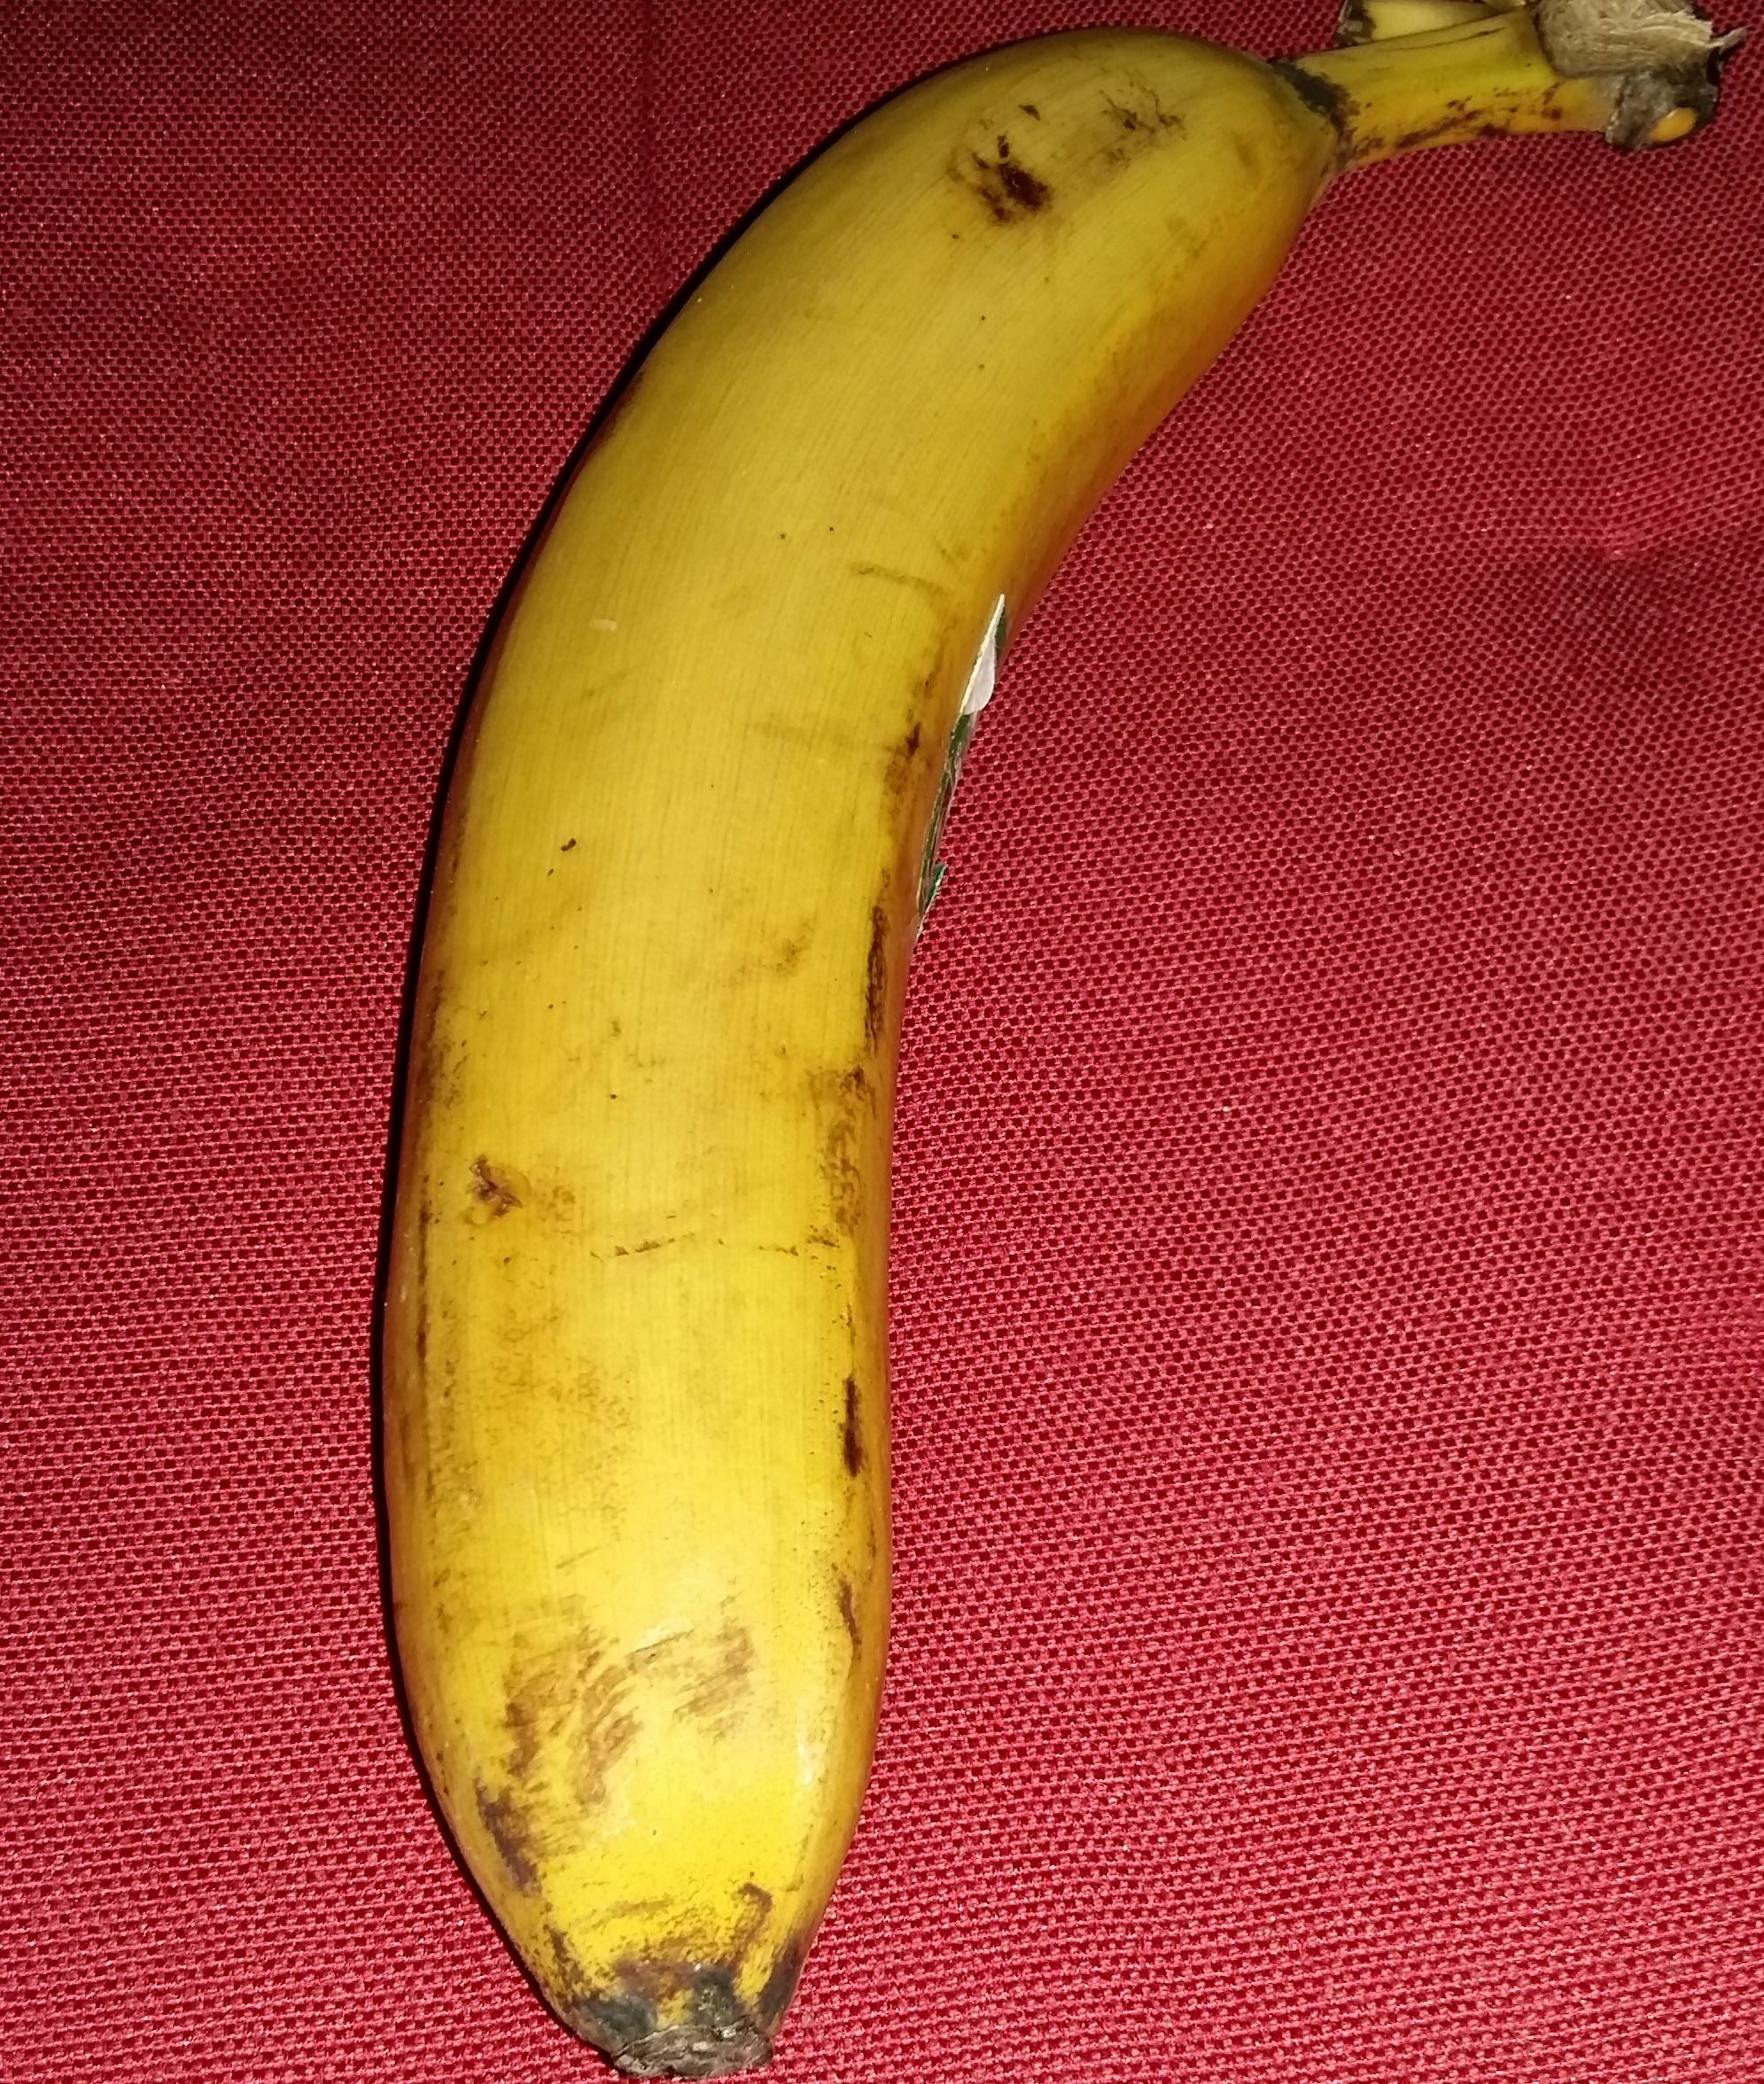 eine Banane auf rotem Grund